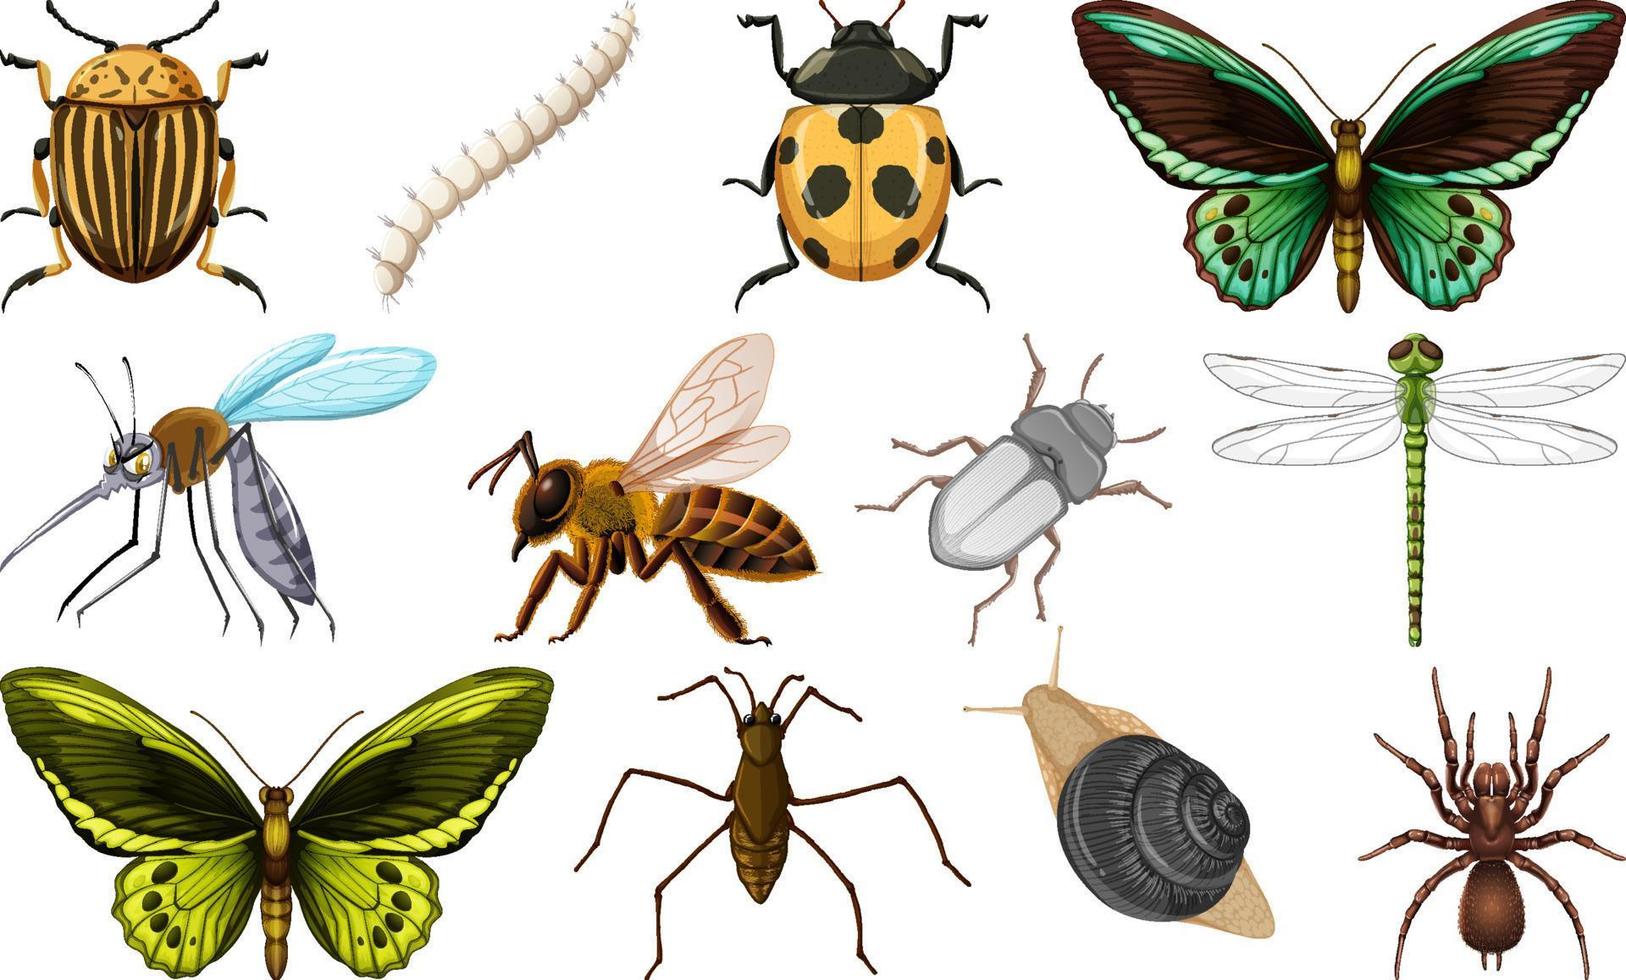 colección de diferentes tipos de insectos vector